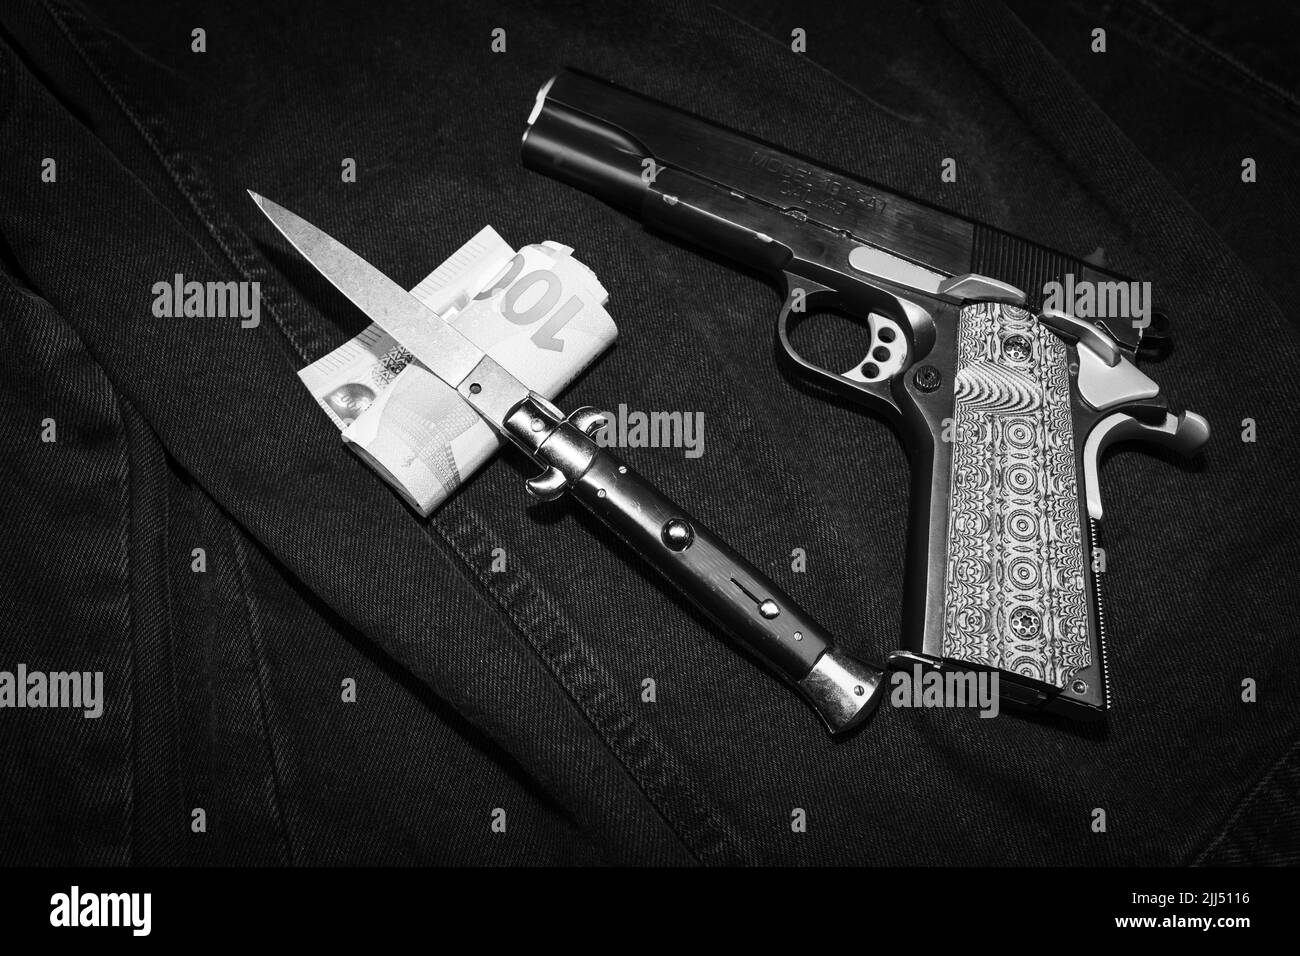 Ein italienisches Messer, eine Geldscheinrolle und eine Pistole mit dekorativem Griff, monochromes Foto Stockfoto